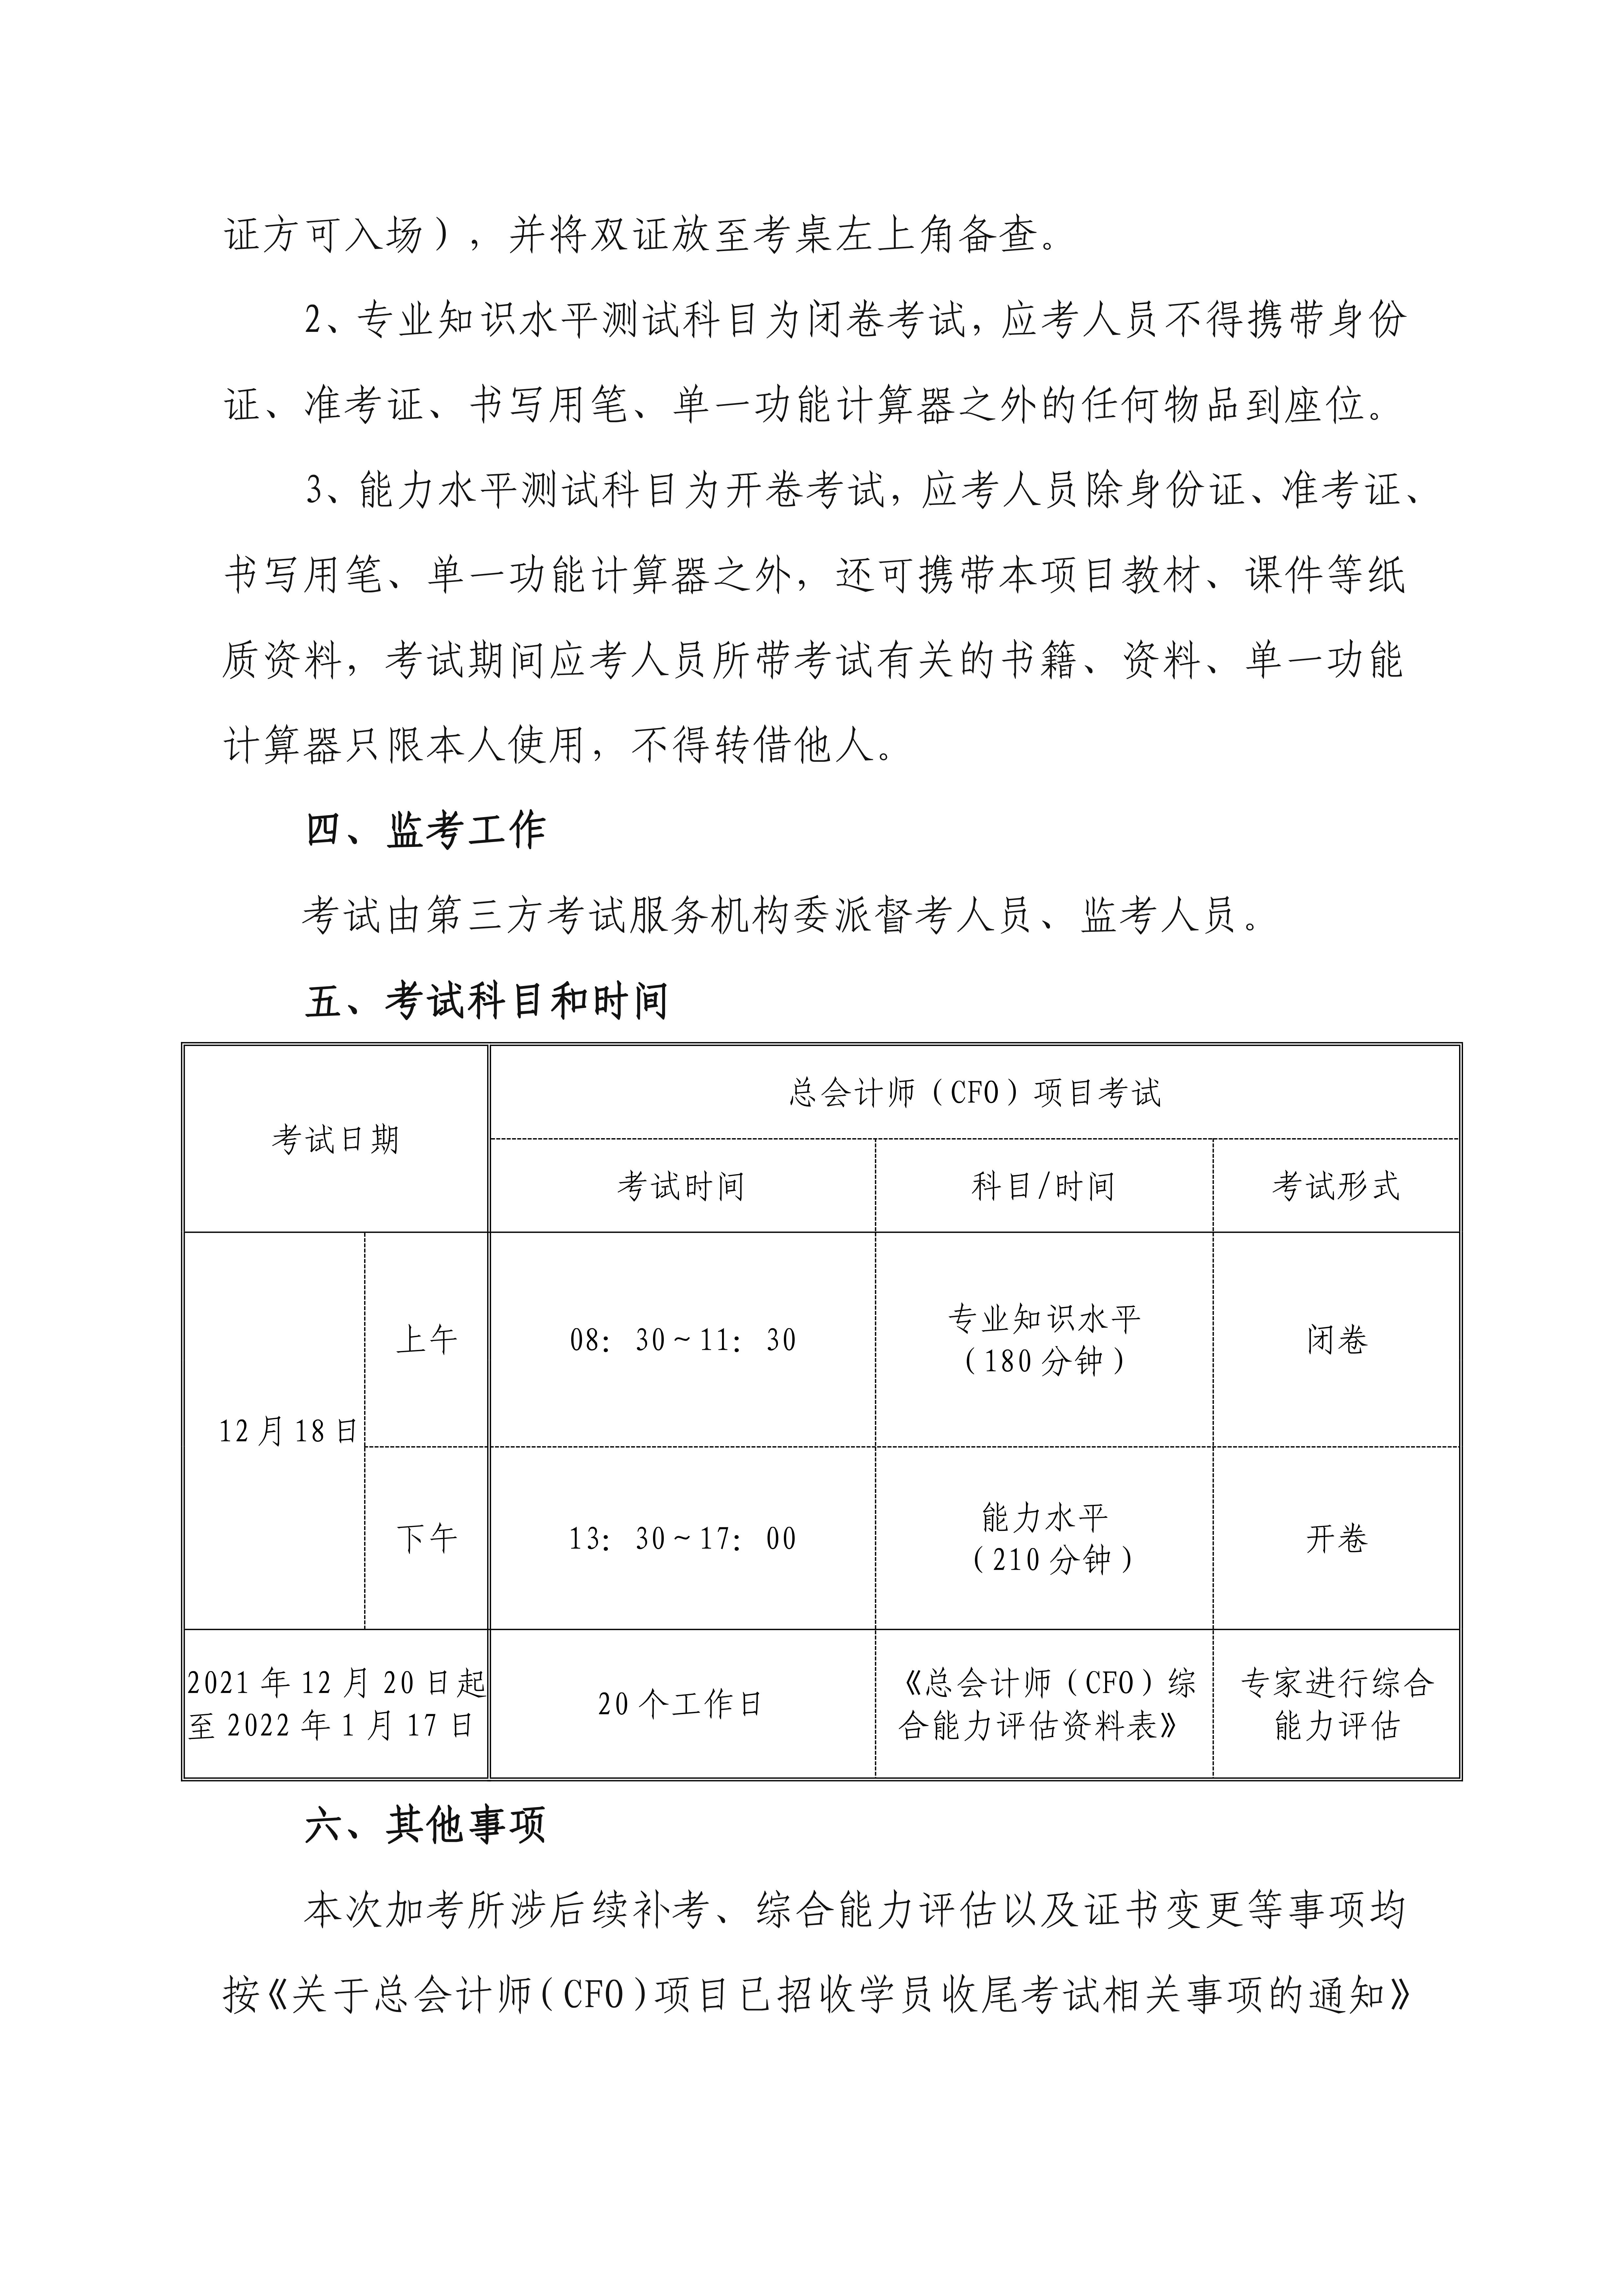 关于总会计师（cfo）项目郑州考区加考相关事项的通知_01.jpg